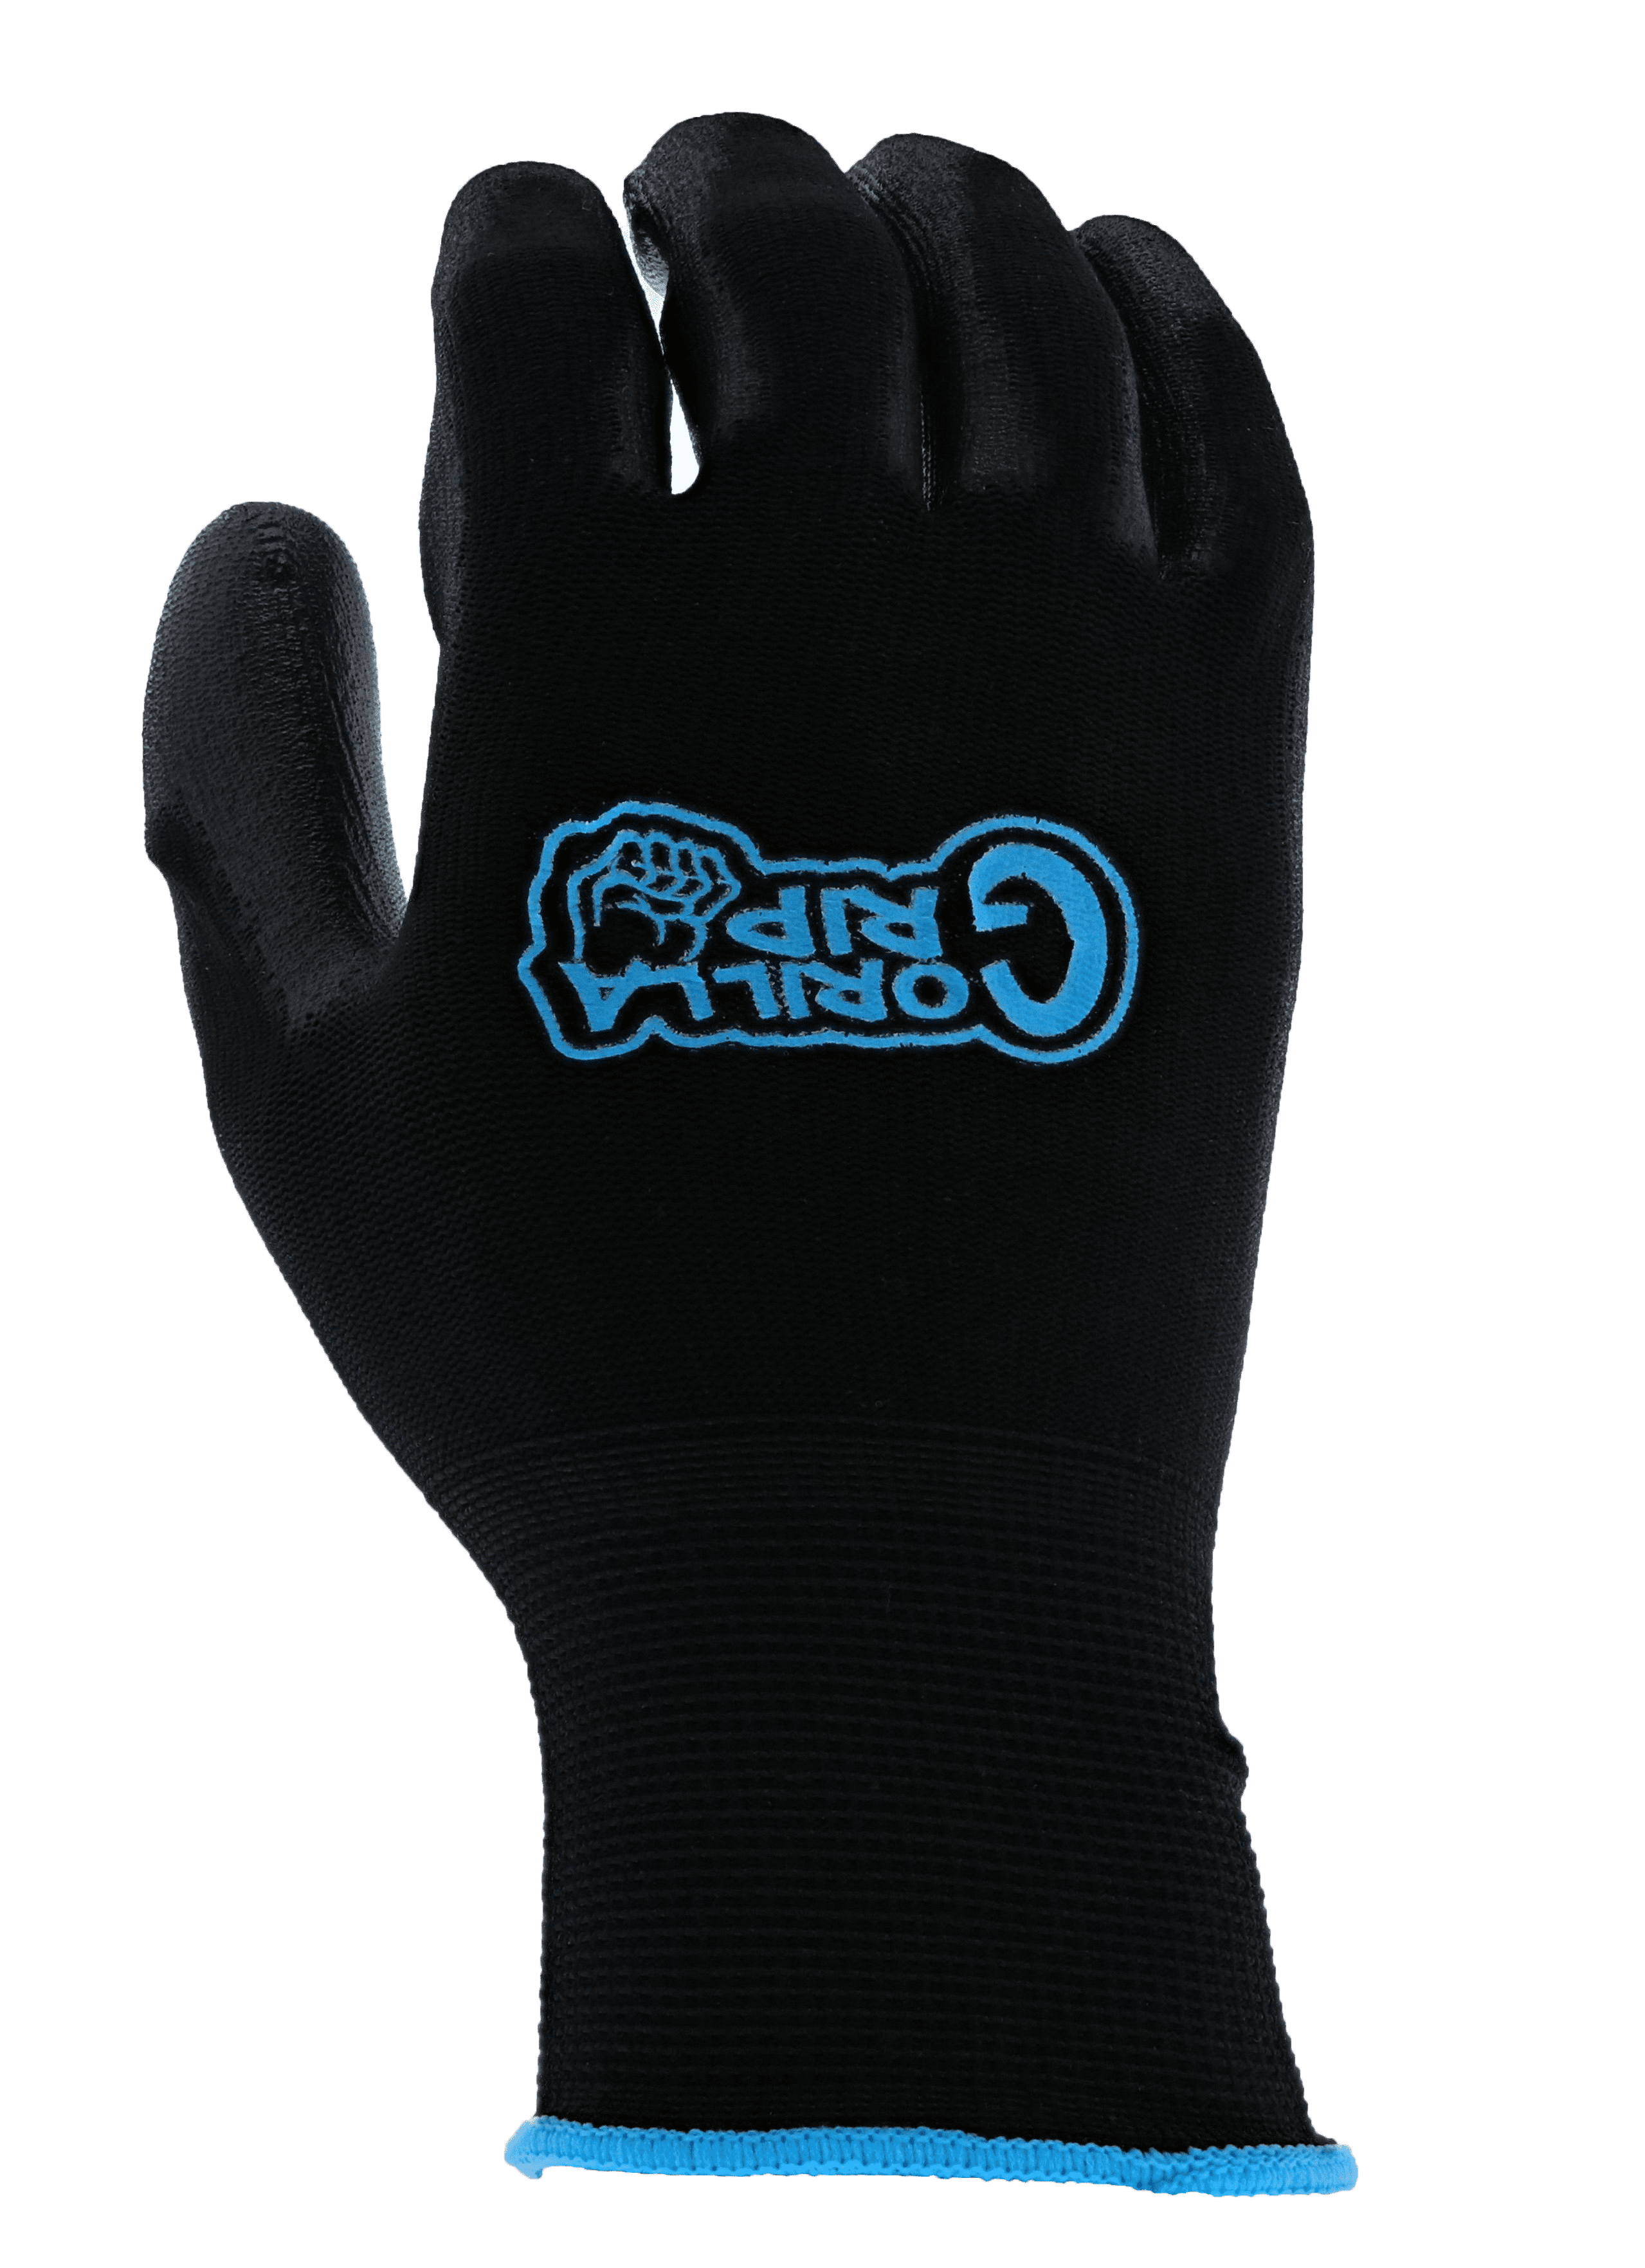 Grease Monkey Men's Gorilla Grip Never Slip Gloves - XL, Model# 25053-26